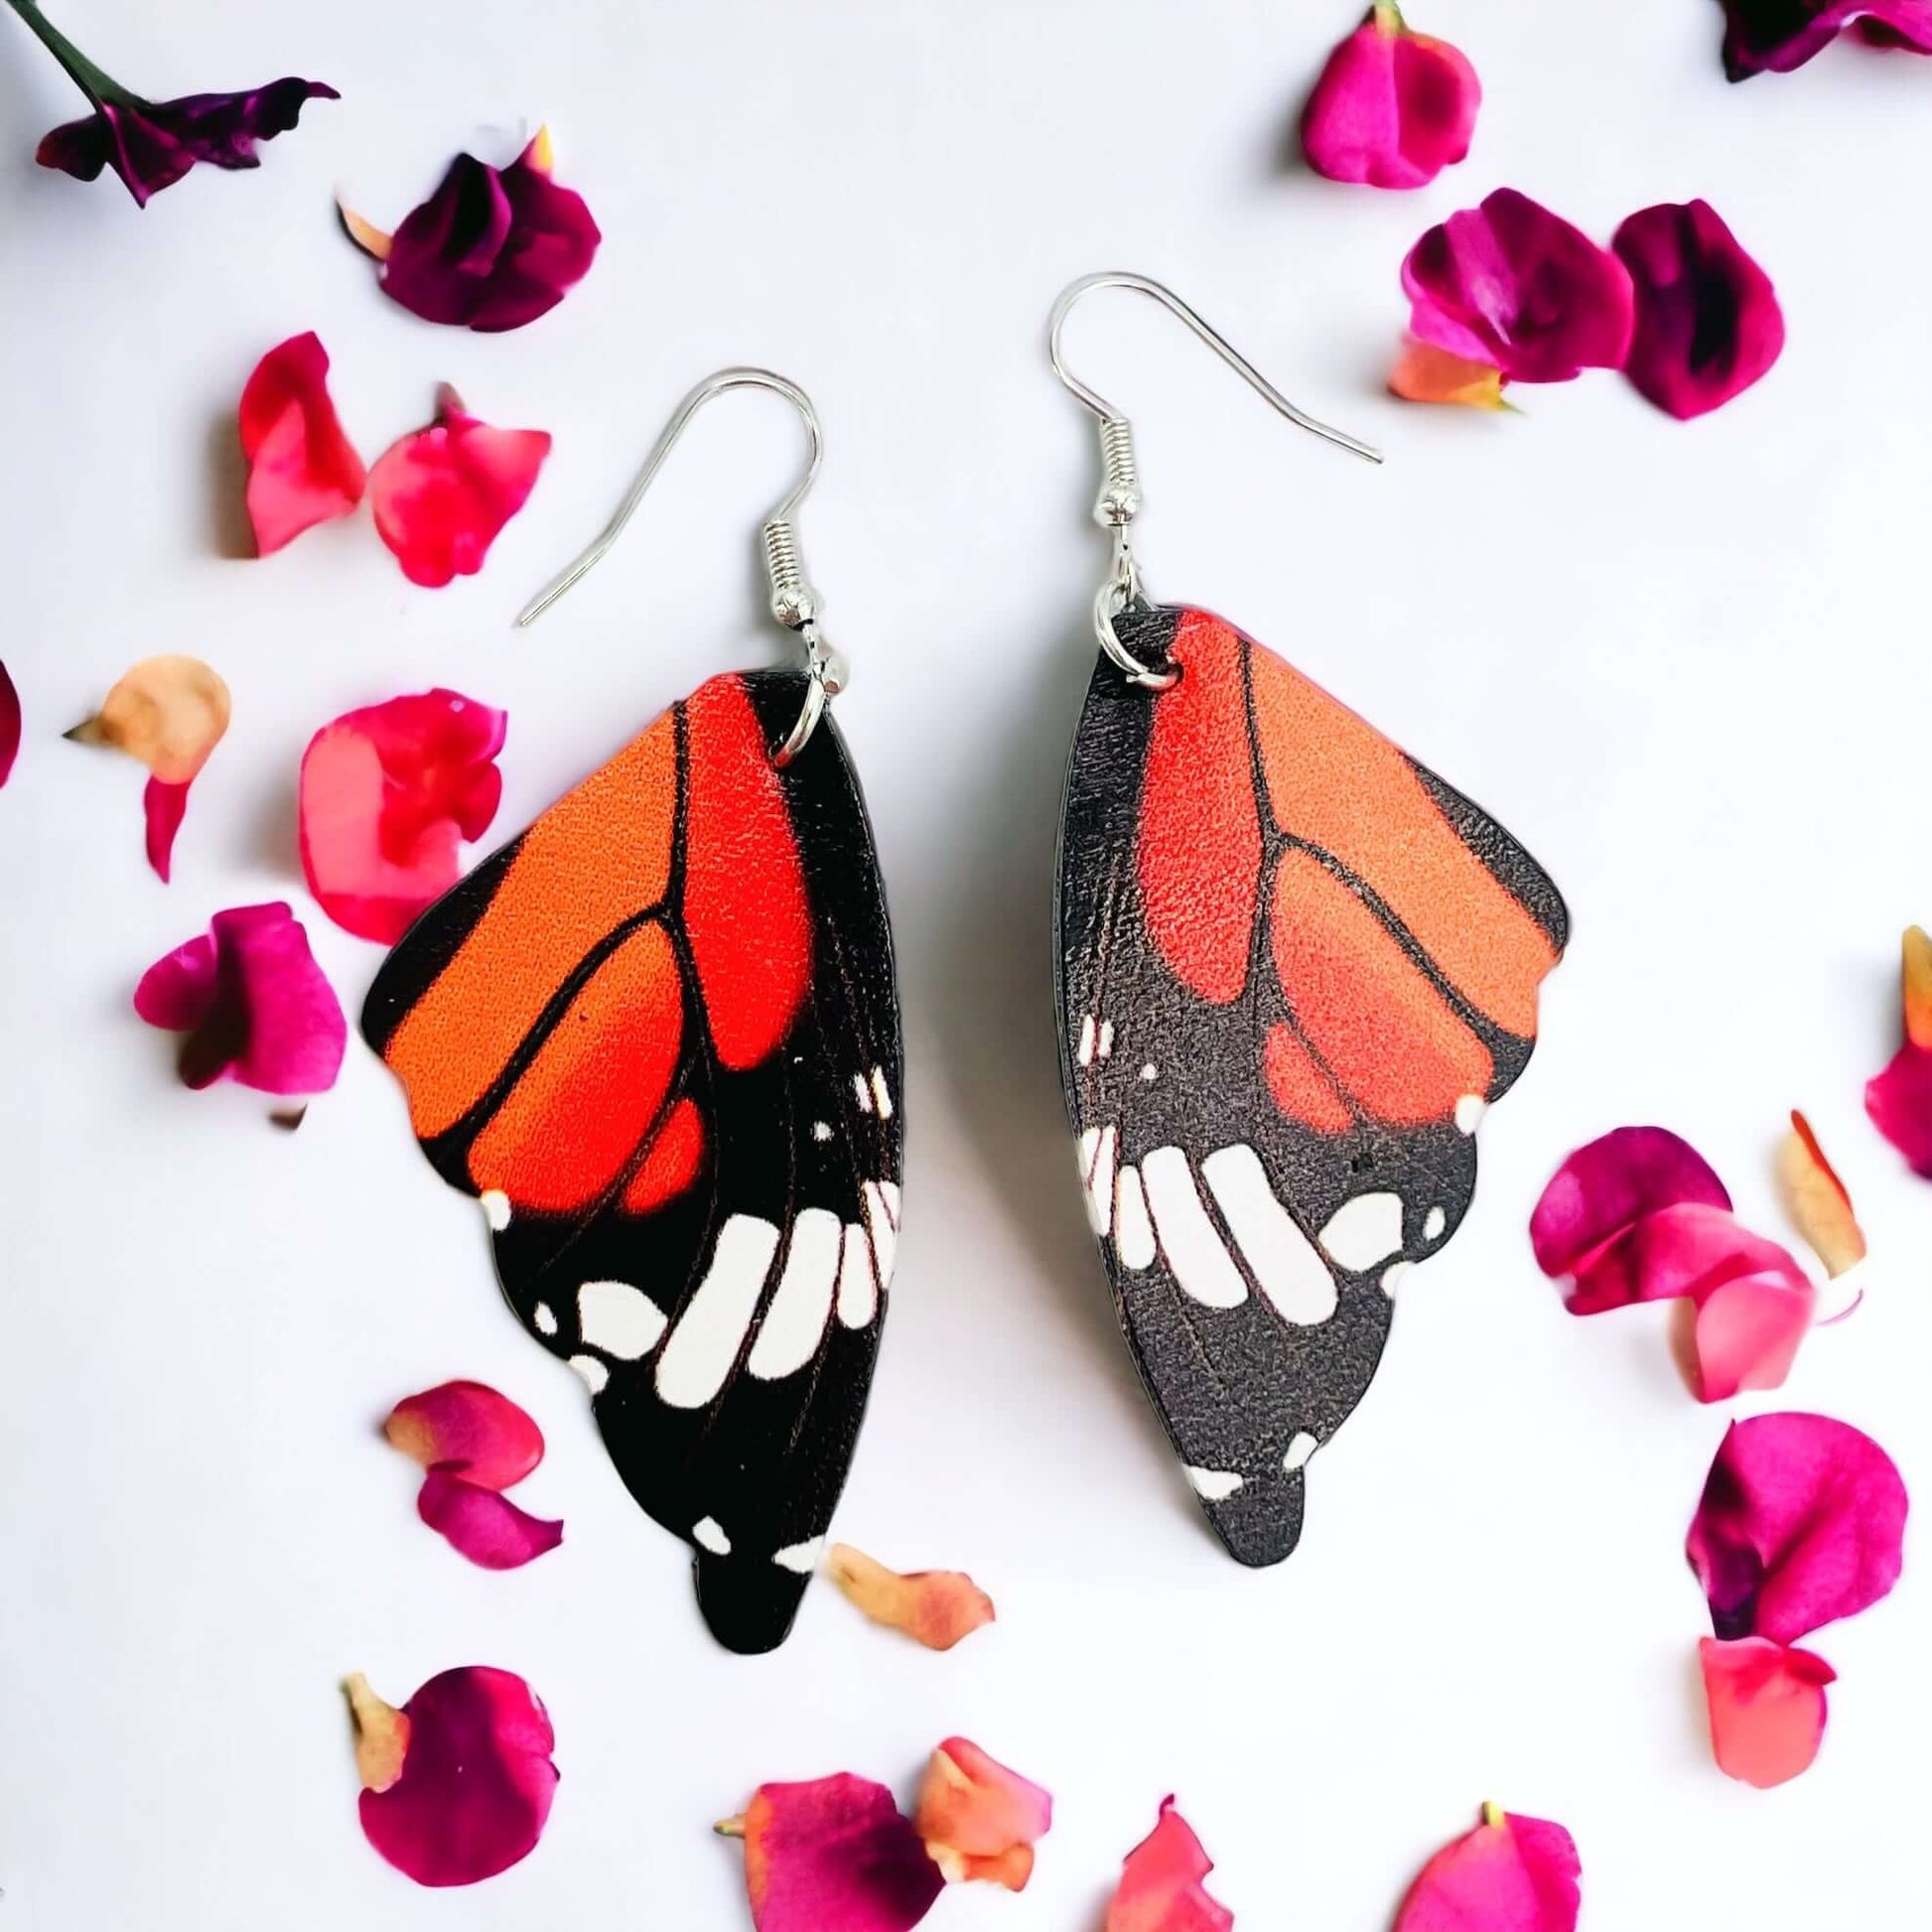 Colourful butterfly wings earrings